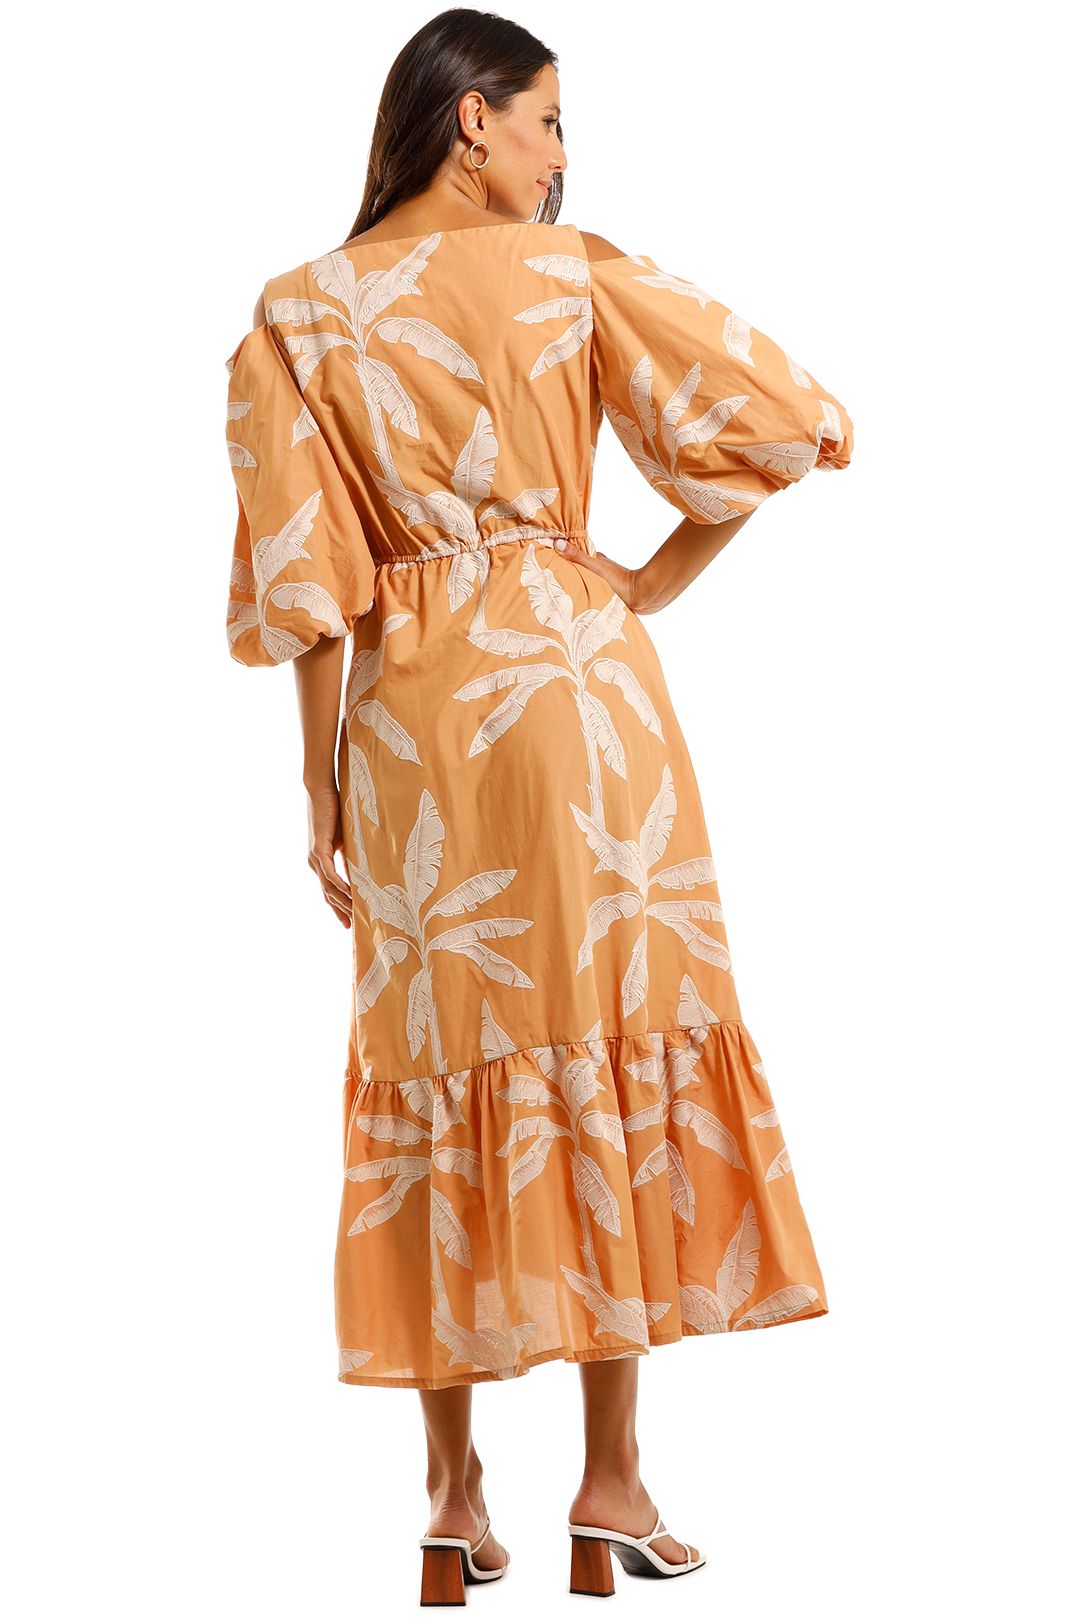 Apartment Clothing Palm Off Shoulder Dress Cotton Dress